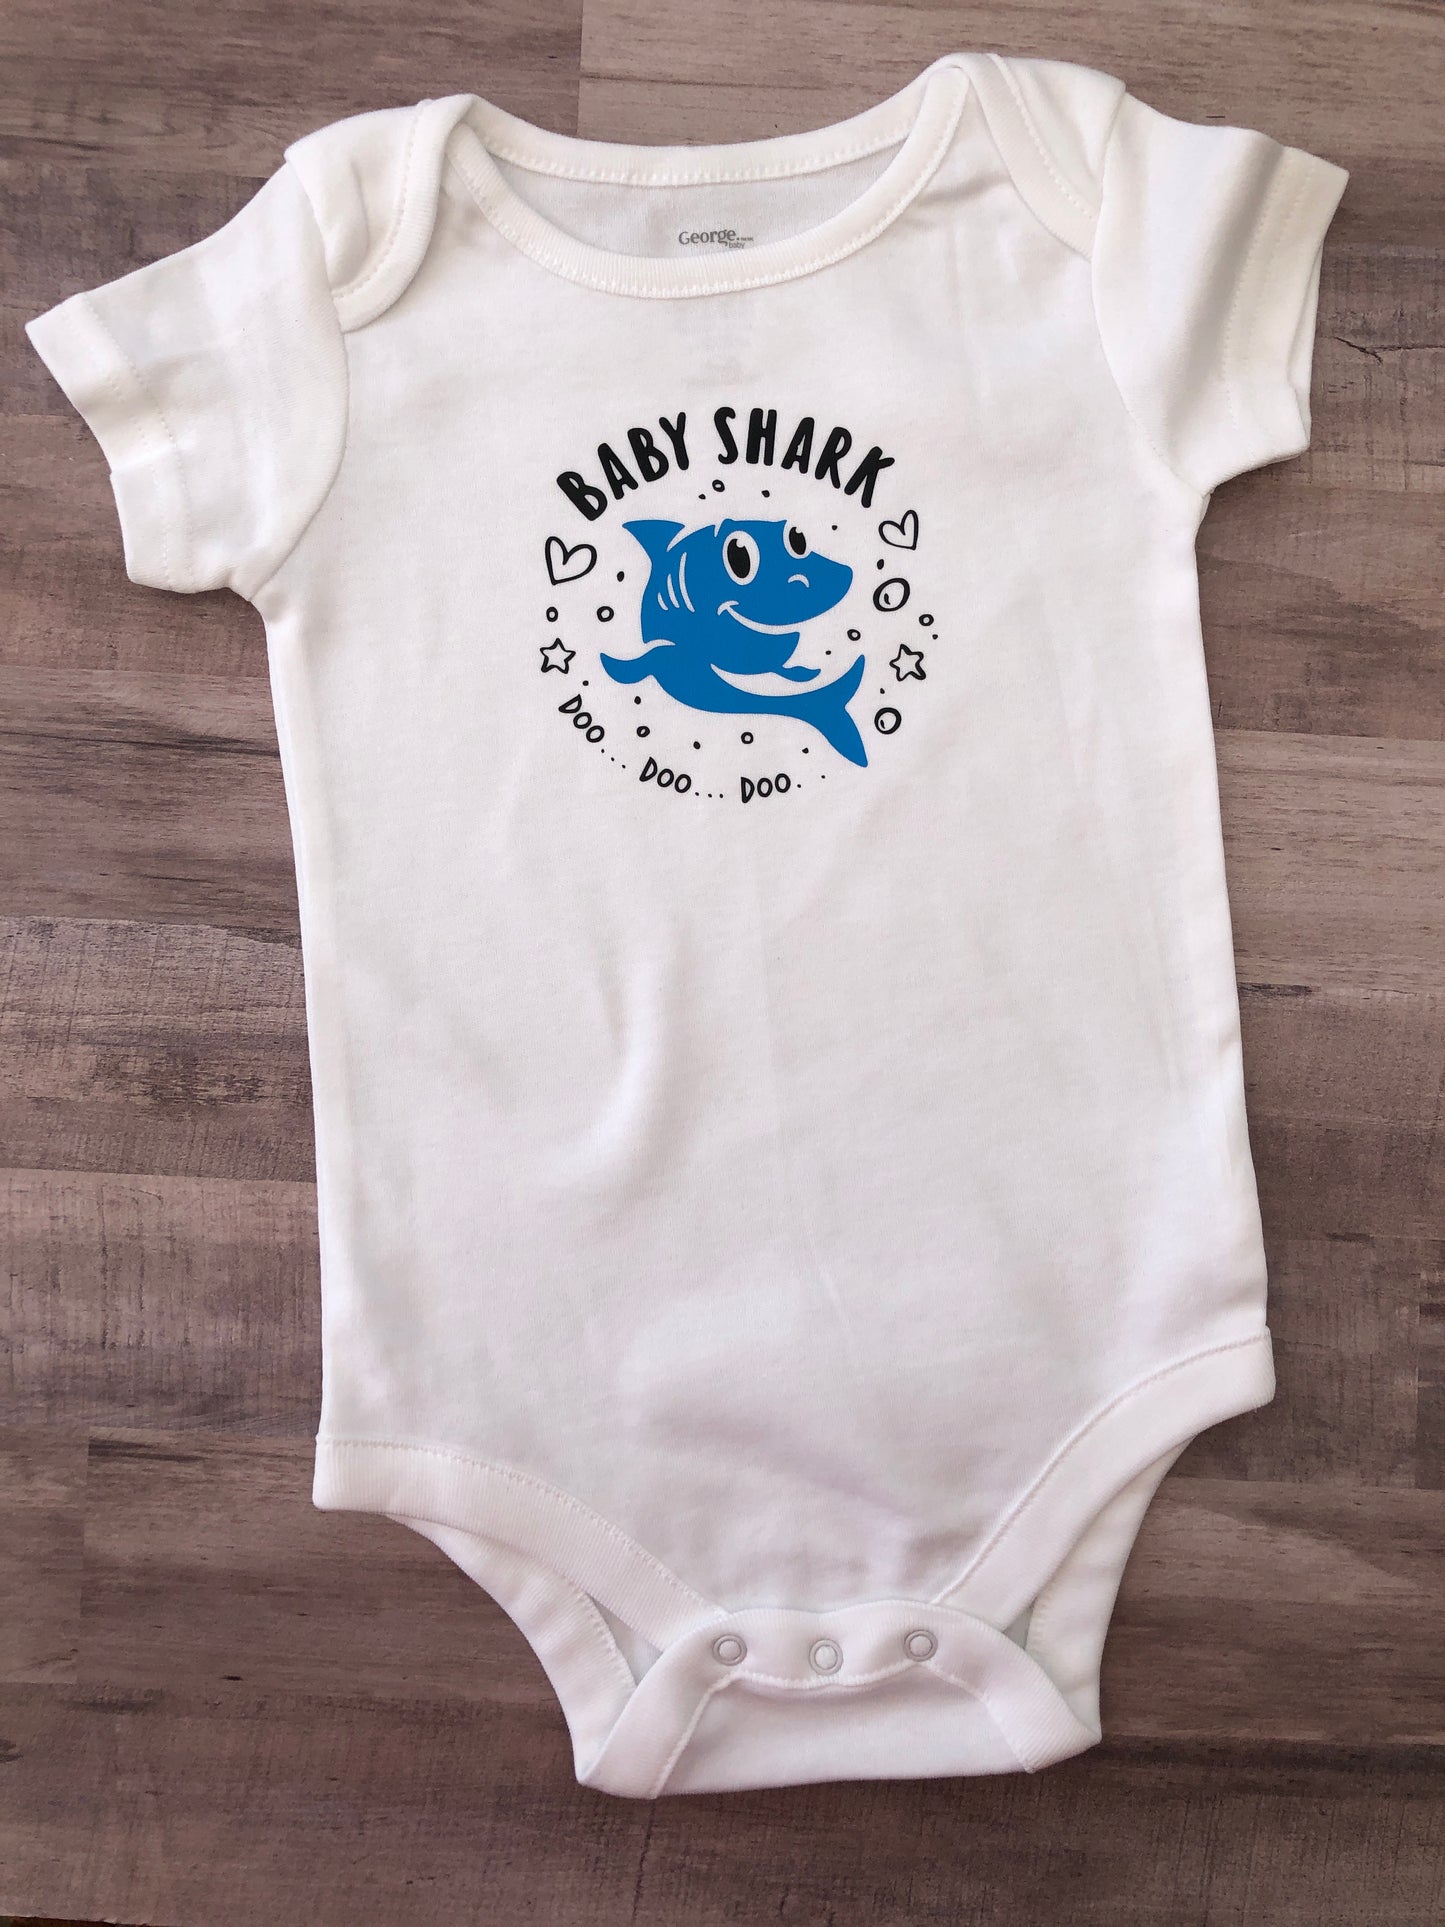 Baby Shark Onesie